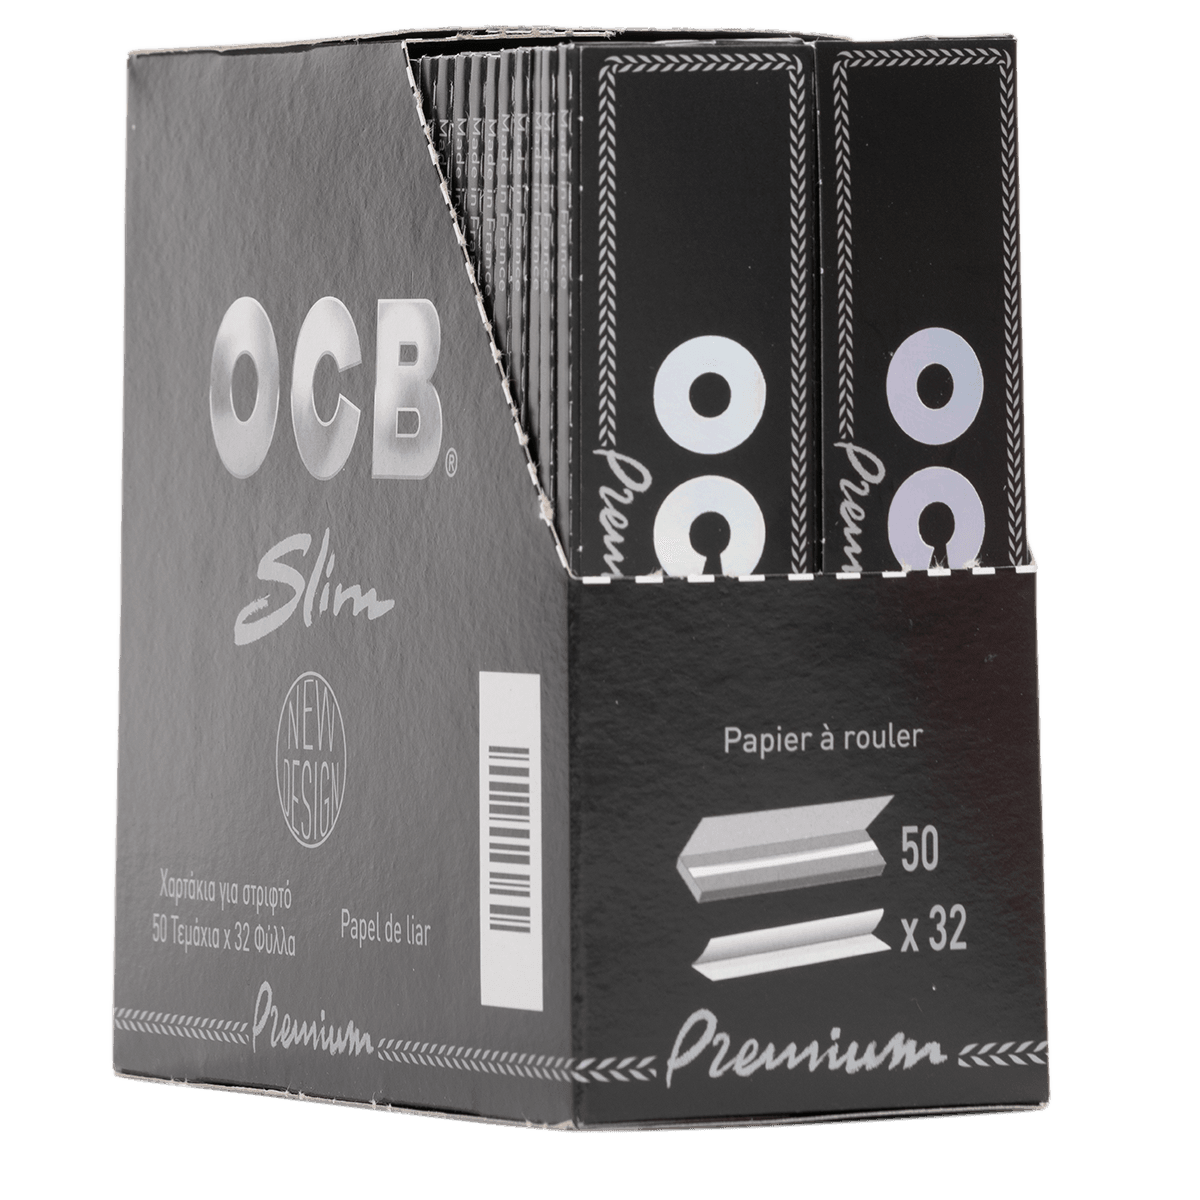 20 x OCB slim Premium King Size Papers Blättchen schwarz 